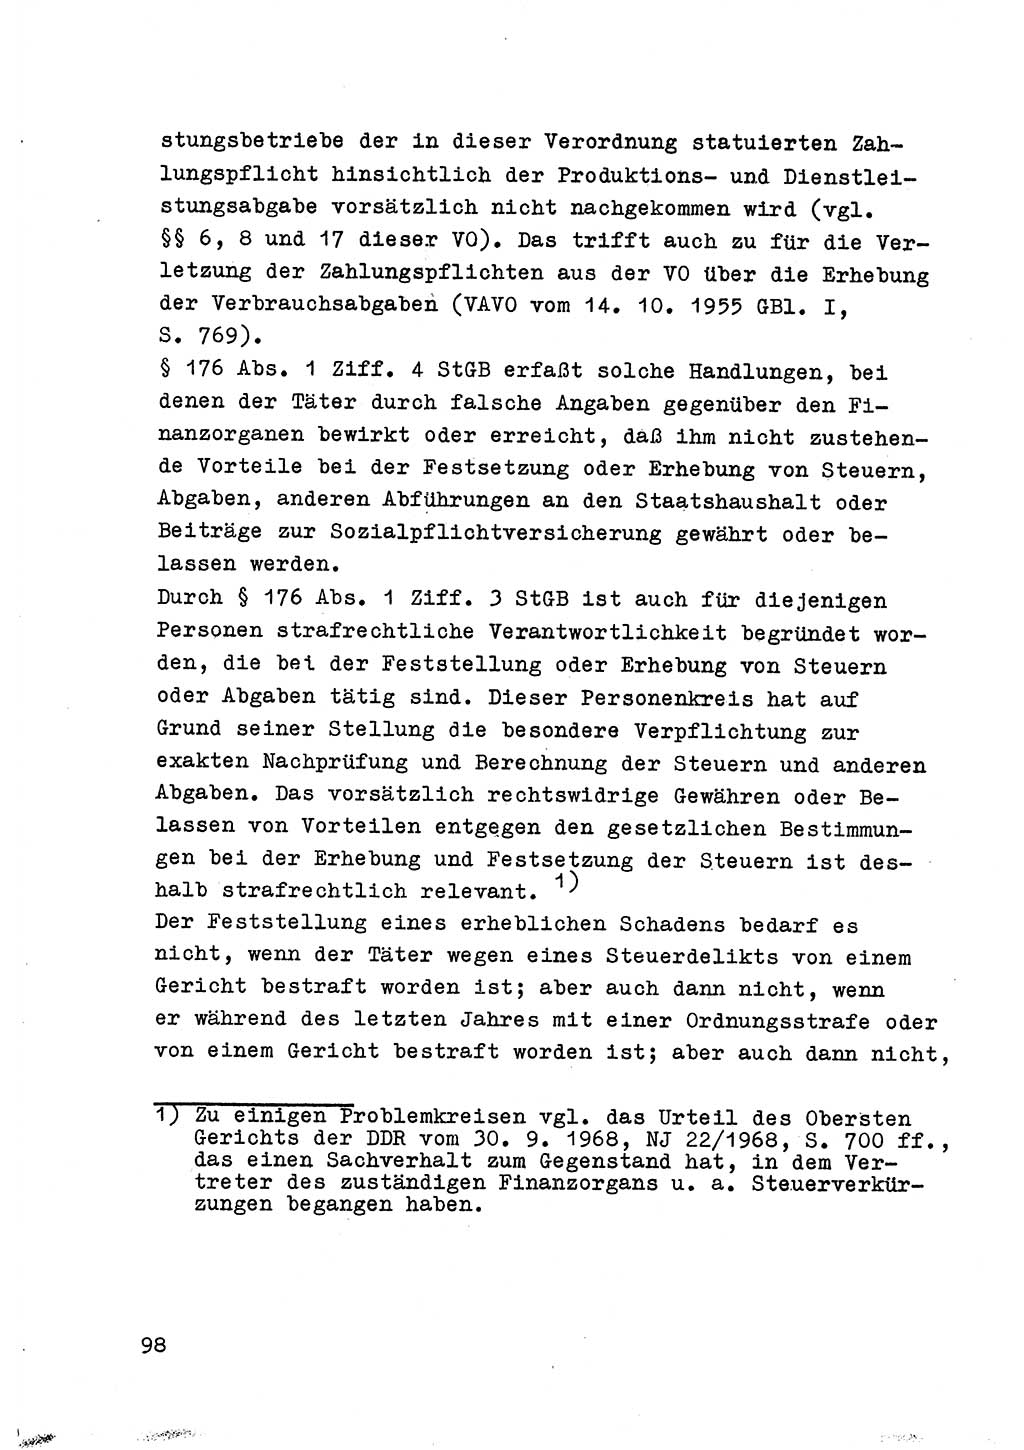 Strafrecht der DDR (Deutsche Demokratische Republik), Besonderer Teil, Lehrmaterial, Heft 6 1970, Seite 98 (Strafr. DDR BT Lehrmat. H. 6 1970, S. 98)